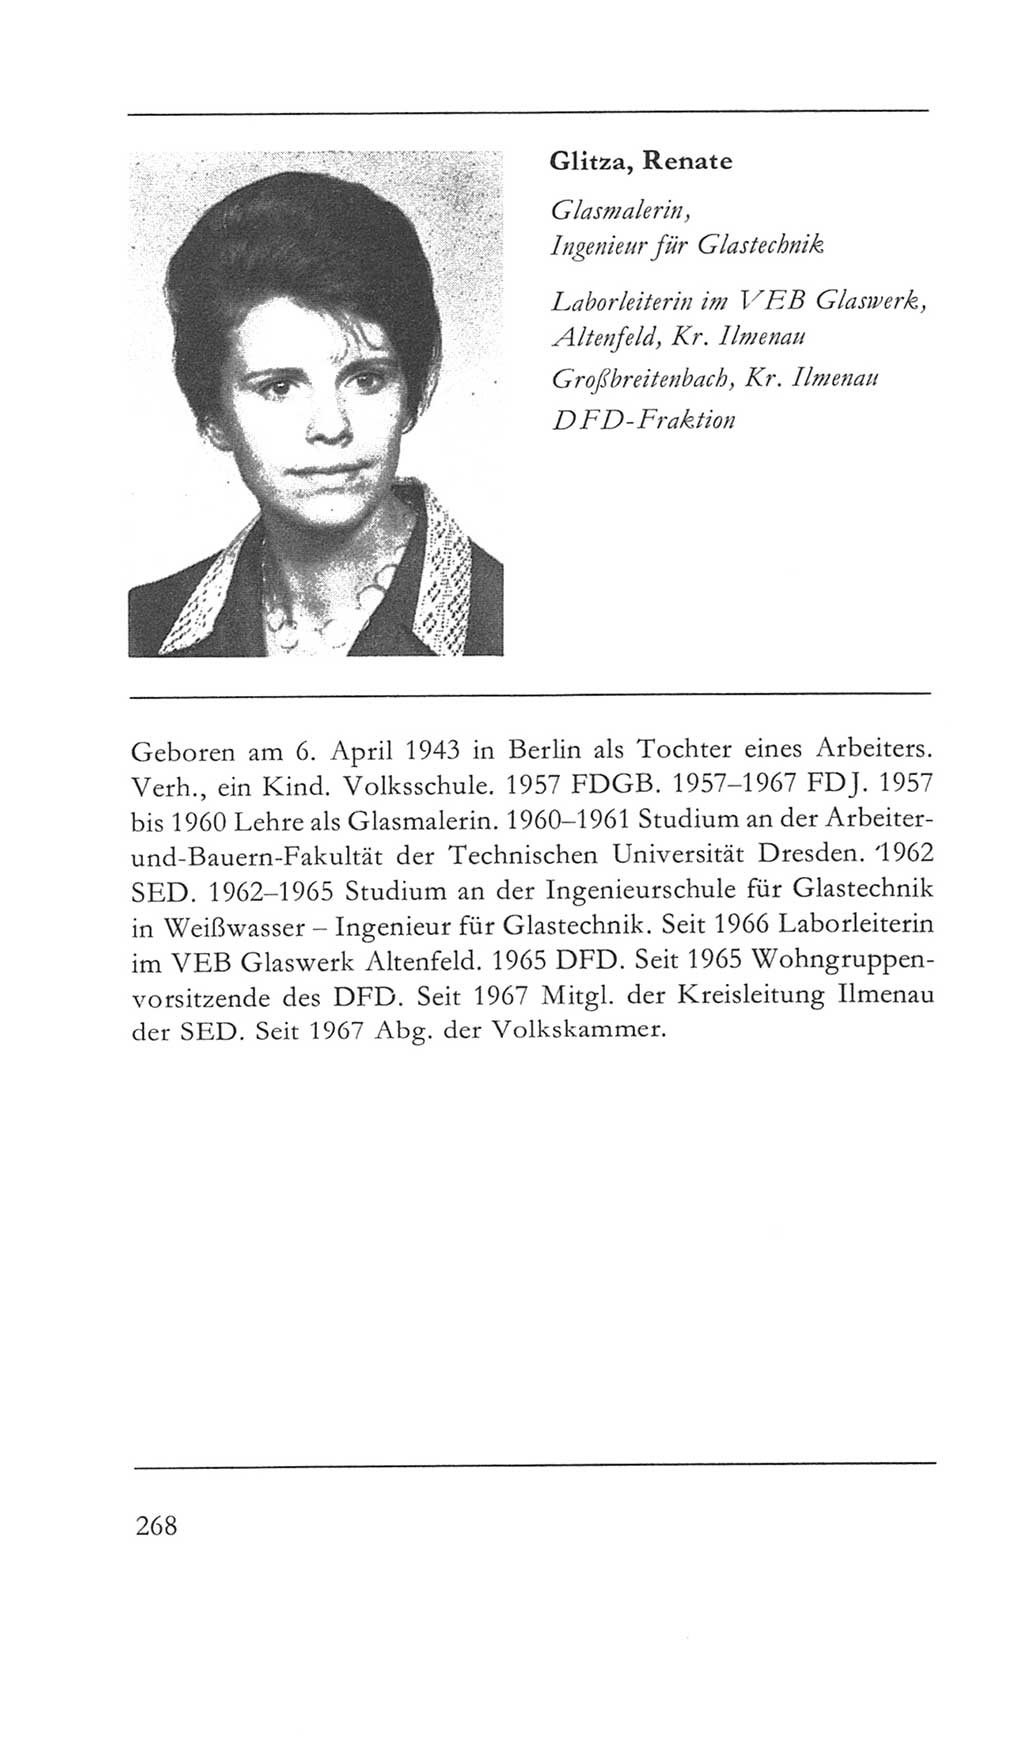 Volkskammer (VK) der Deutschen Demokratischen Republik (DDR) 5. Wahlperiode 1967-1971, Seite 268 (VK. DDR 5. WP. 1967-1971, S. 268)